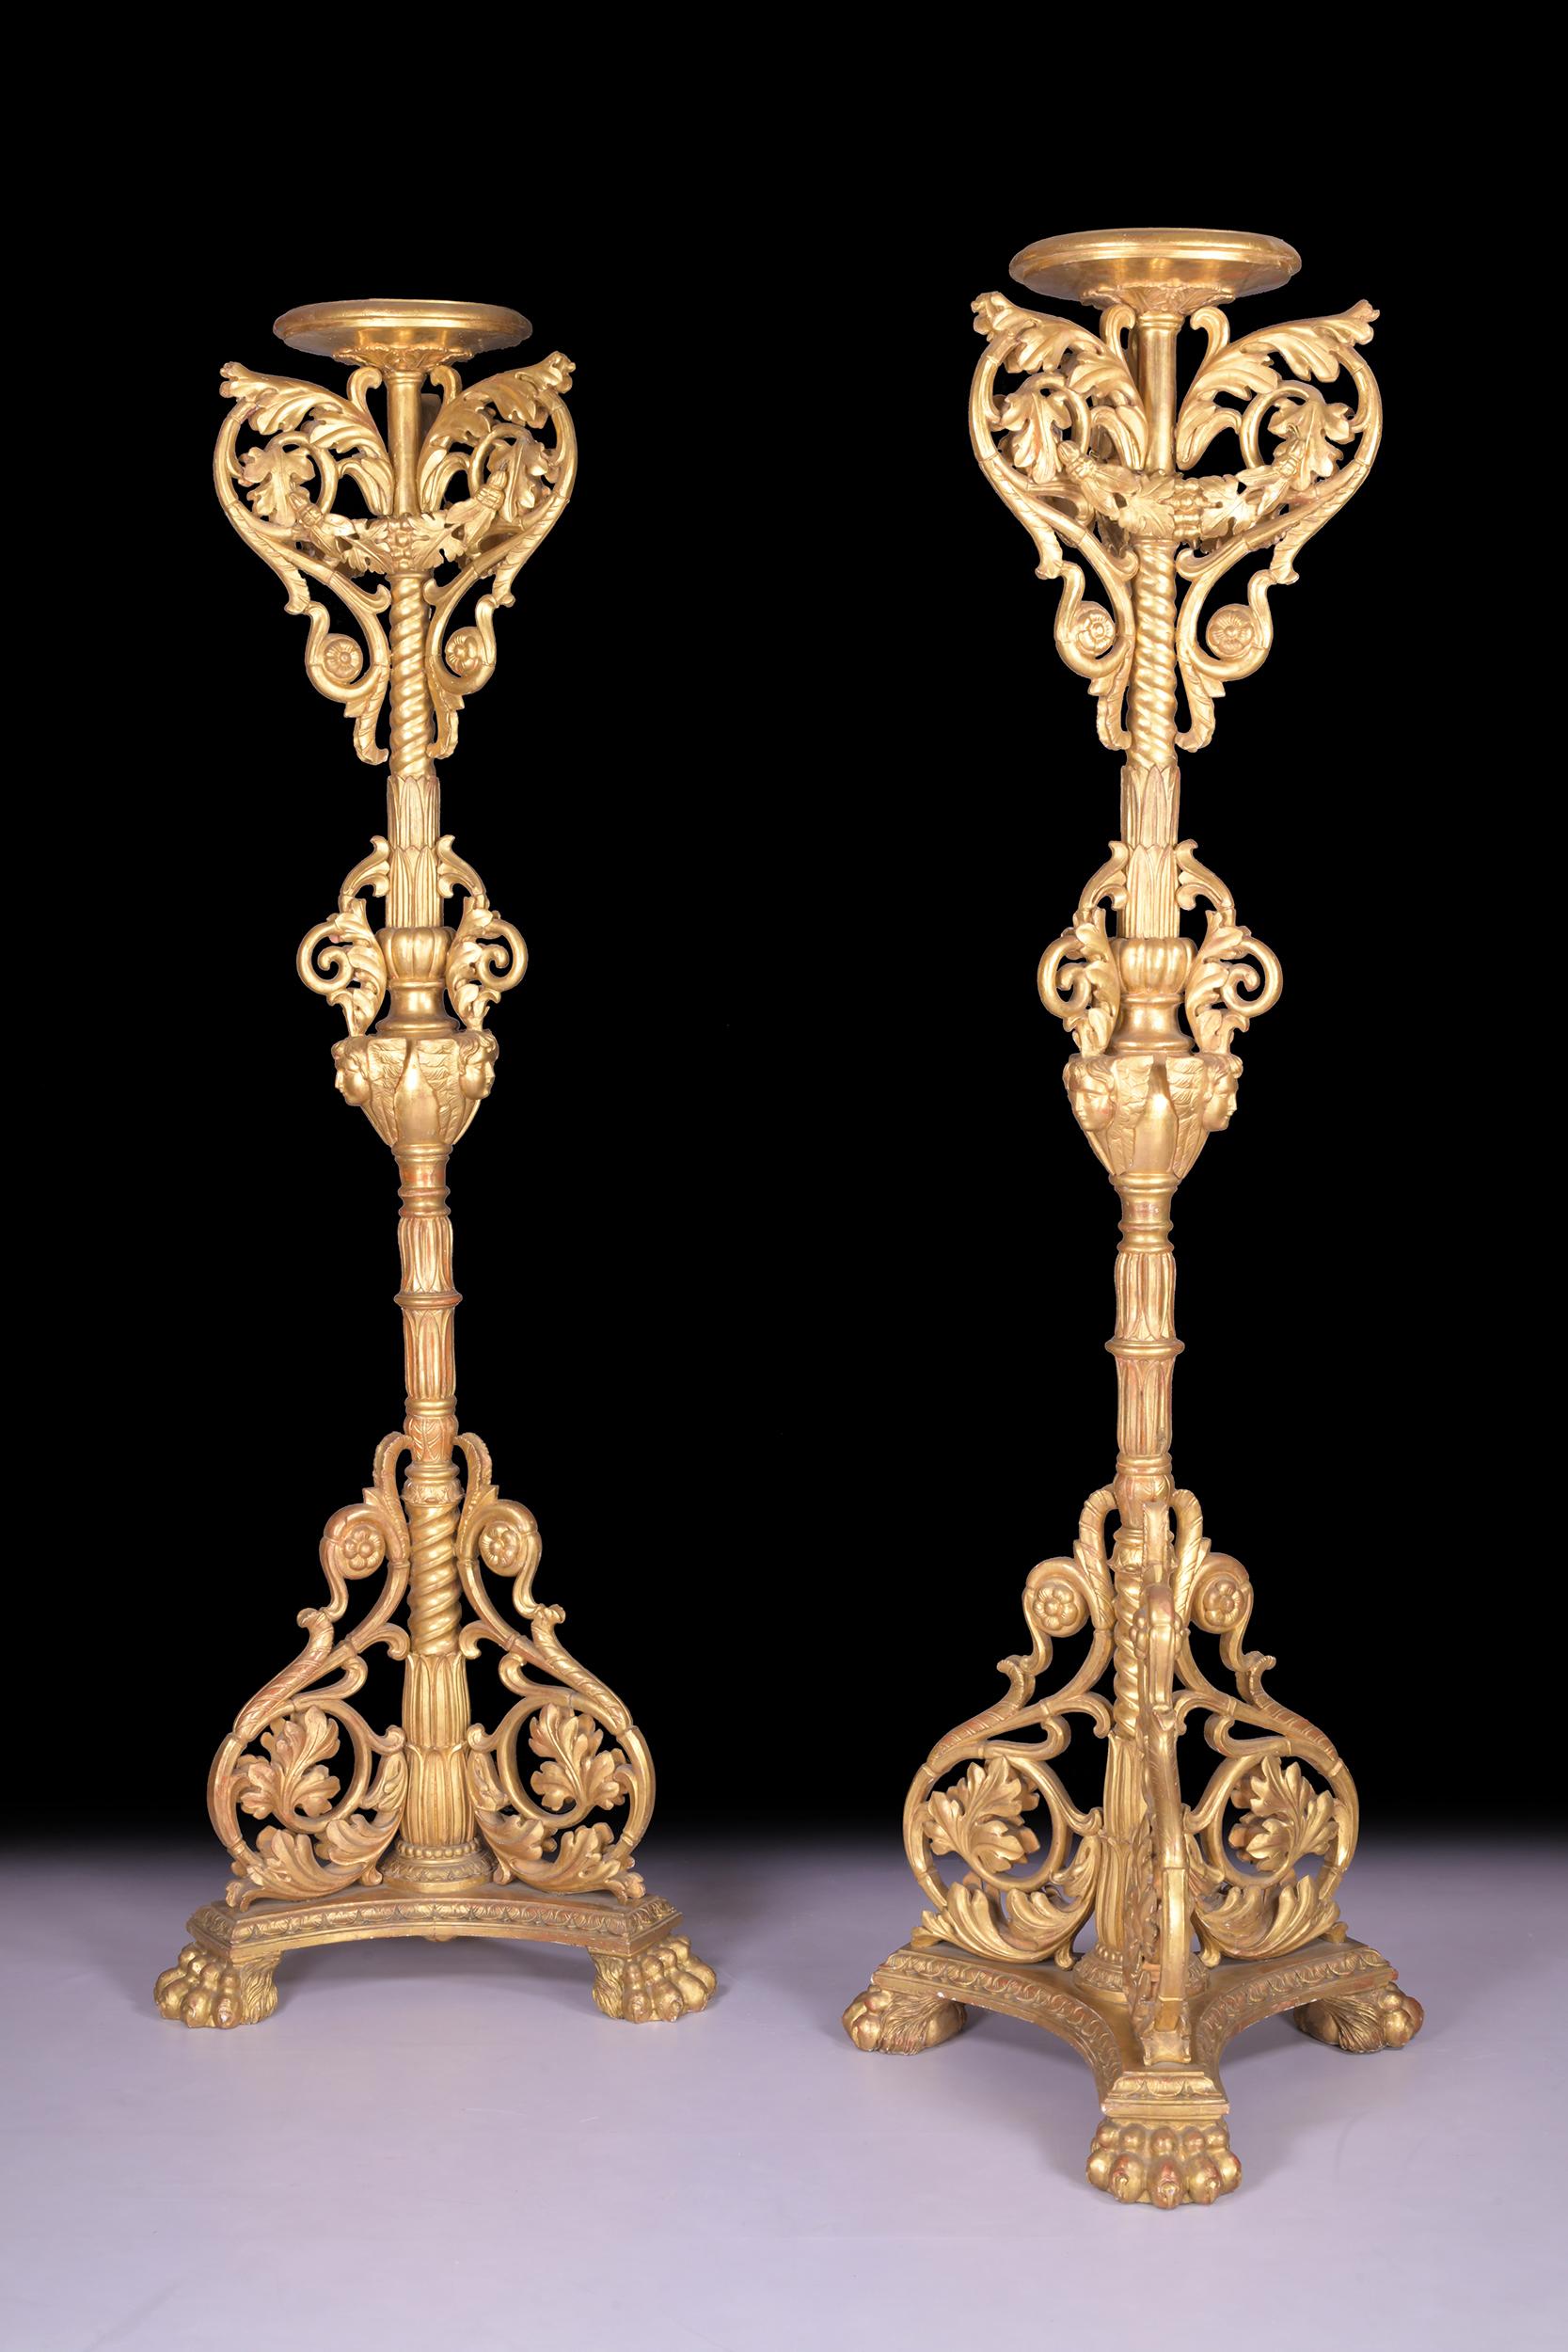 Une magnifique paire monumentale de flambeaux en bois doré sculpté de style baroque italien, chacun comprenant un sommet circulaire en forme de cuvette au-dessus d'un pilier finement sculpté de guirlandes florales et de masques de gargouilles se